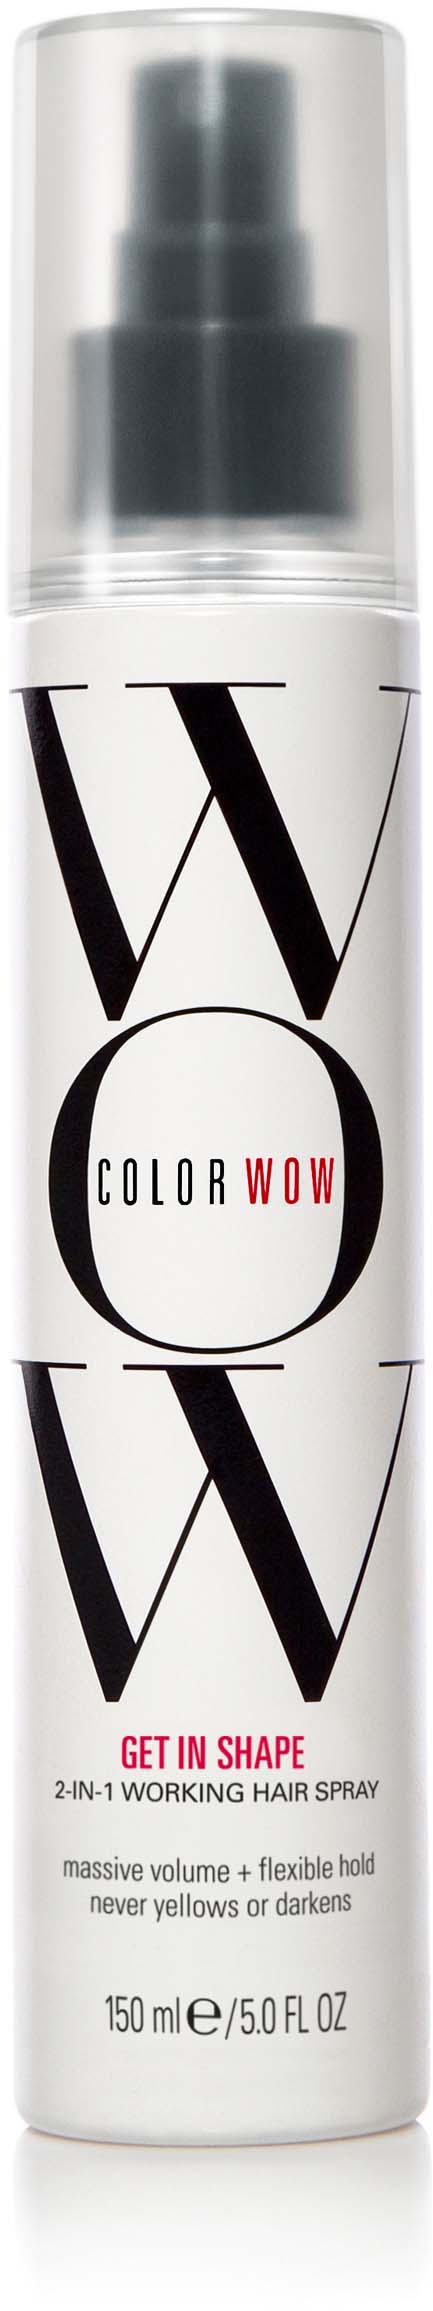 ColorWow Get in Shape Hairspray 150ml